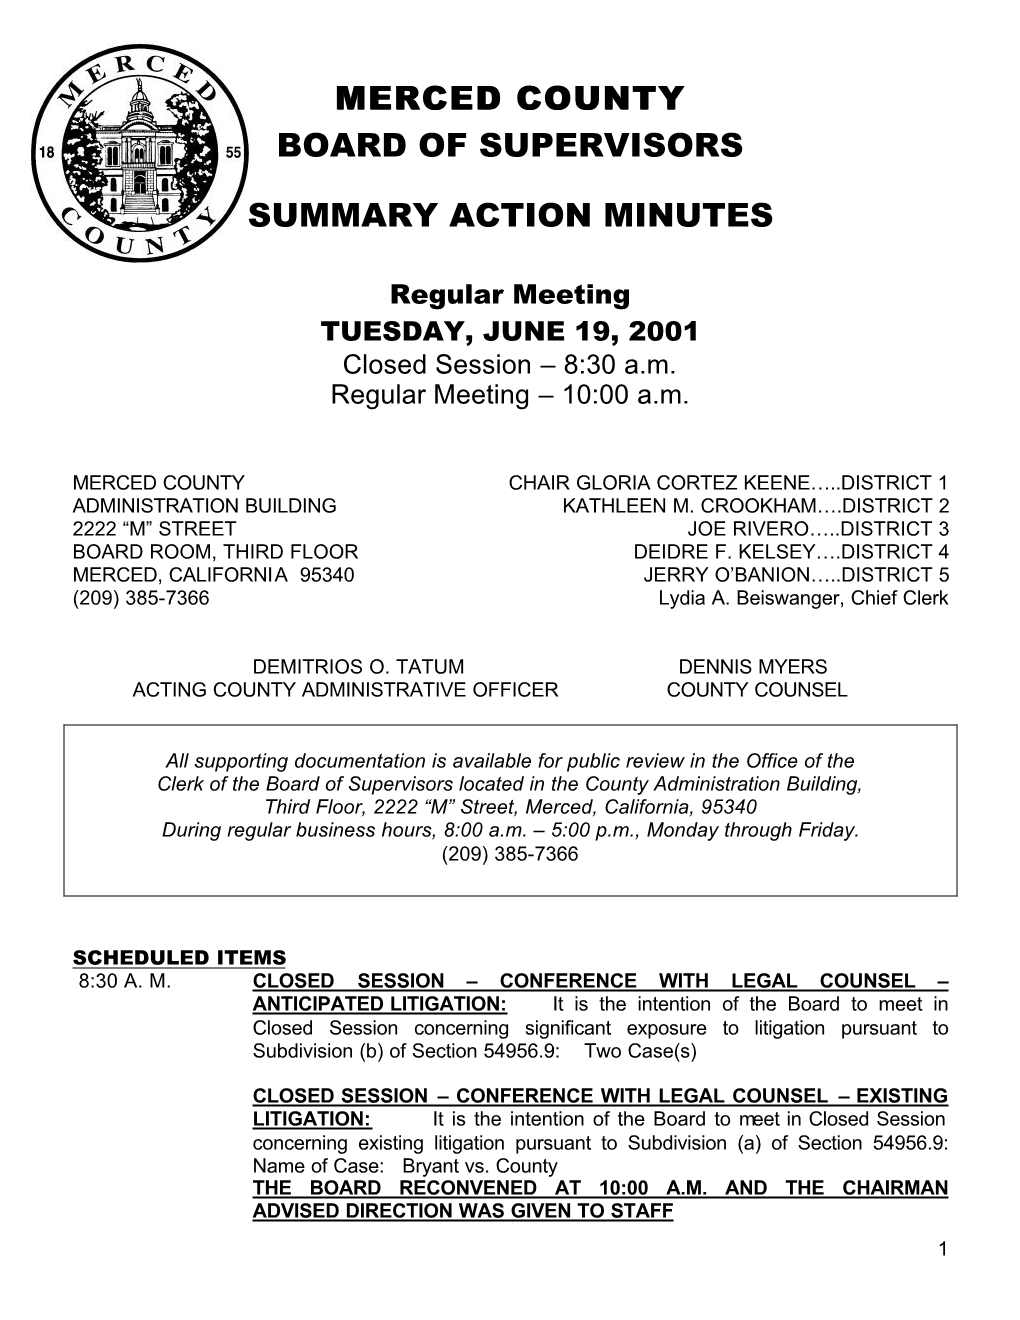 Merced County Board of Supervisors Summary